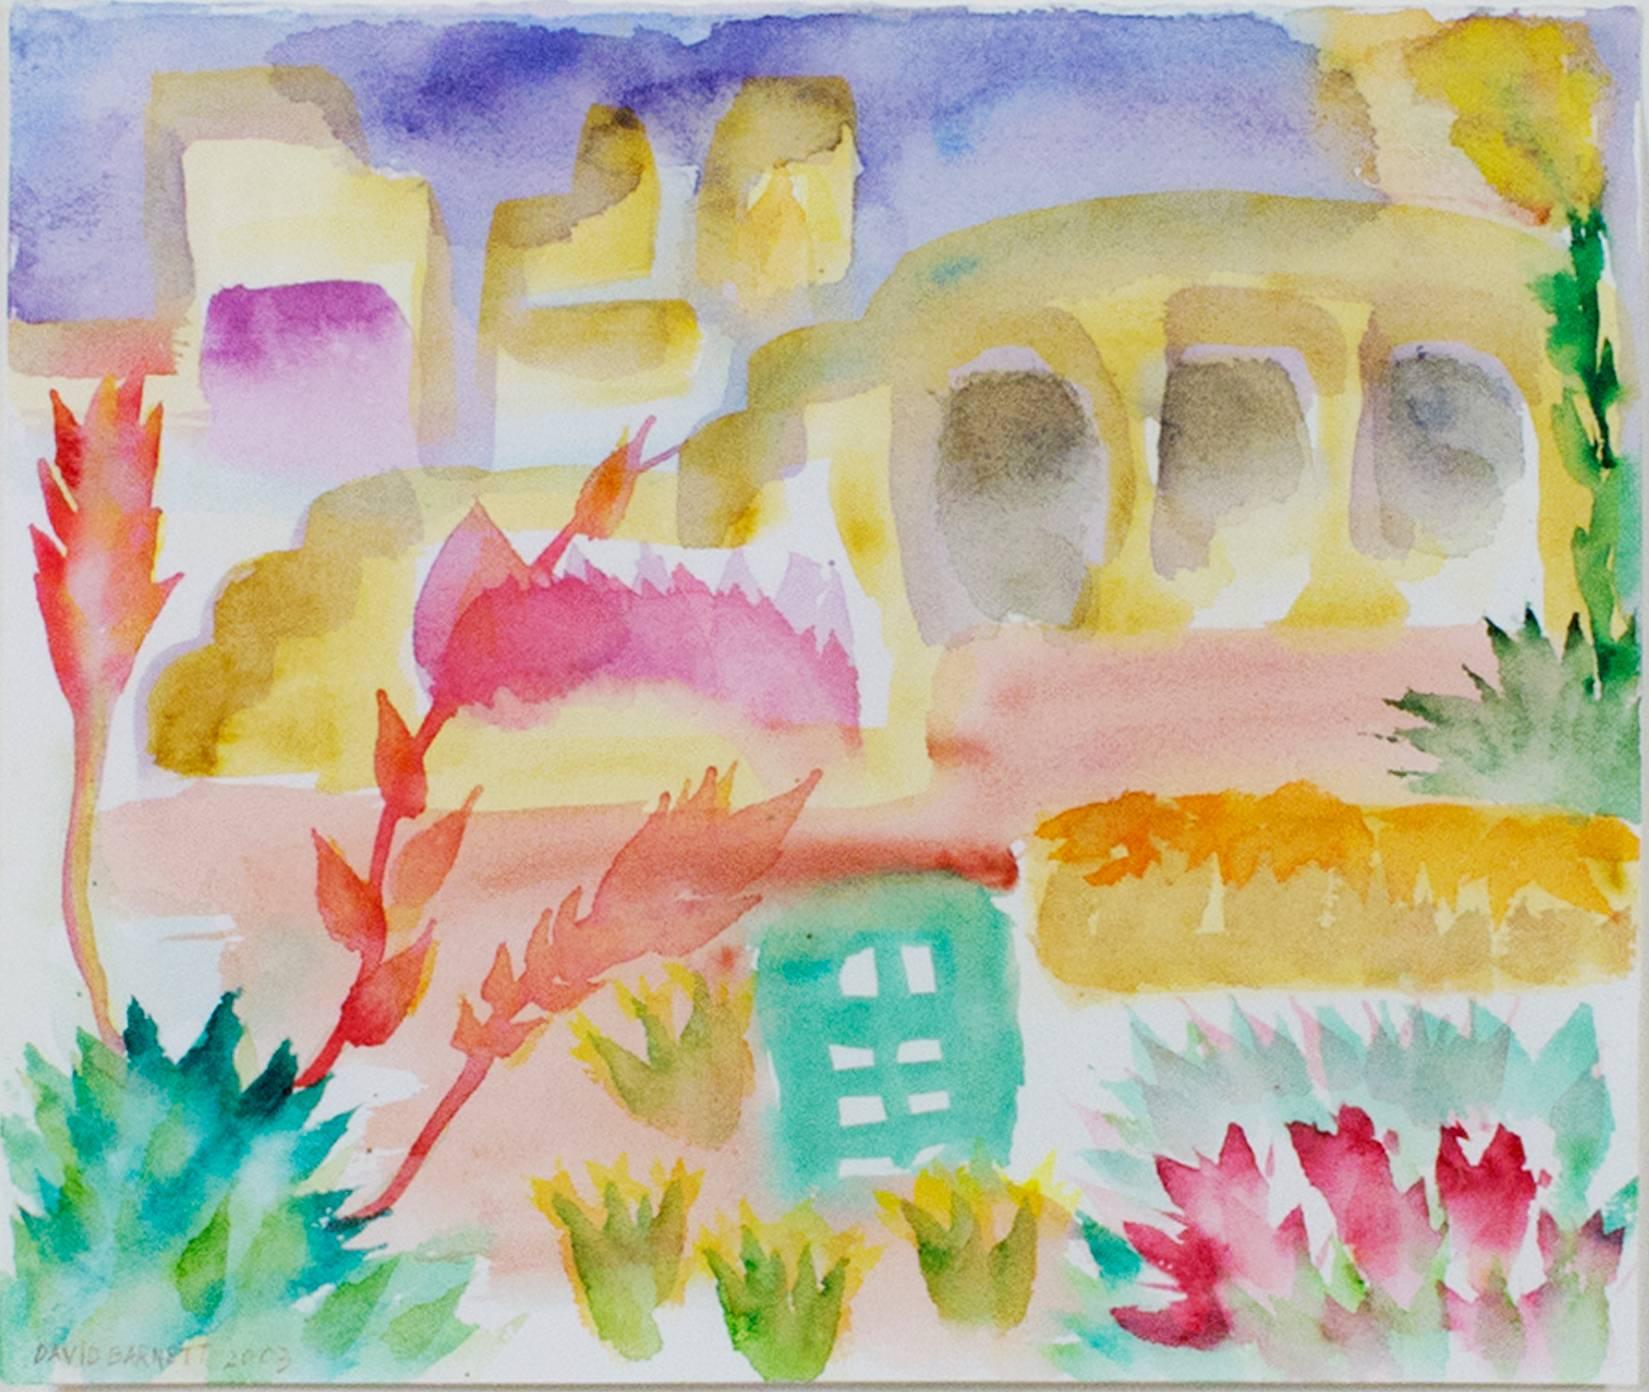 "Footloose in Carefree, AZ" ist ein Original-Aquarell von David Barnett. Der Künstler hat das Werk in der unteren linken Ecke signiert. David Barnett hat mehrere Werke rund um Carefree, AZ, angefertigt, einem beliebten Urlaubsort für ihn und seine